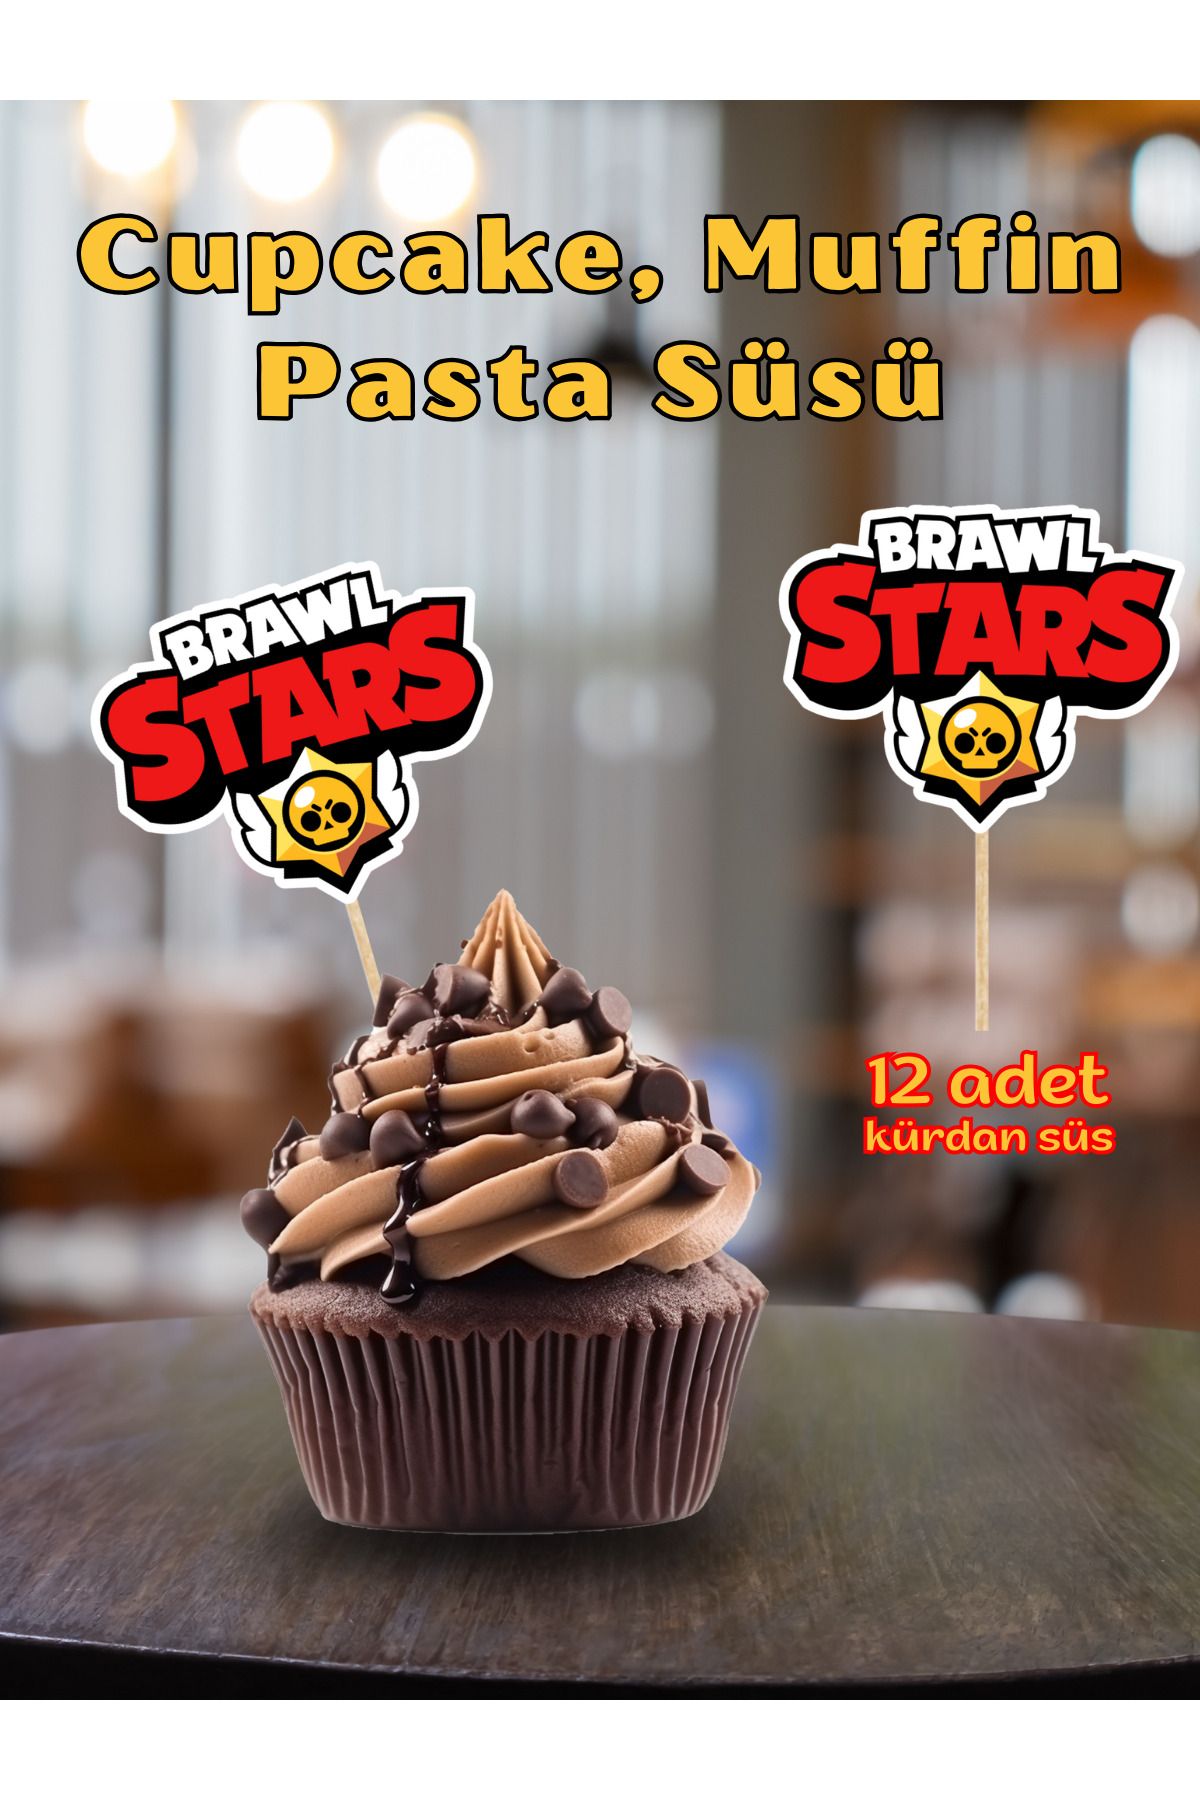 BRAWL STARS Doğum Günü Pasta Kürdanı Brawl Stars, 12 Adet Cupcake Süsü